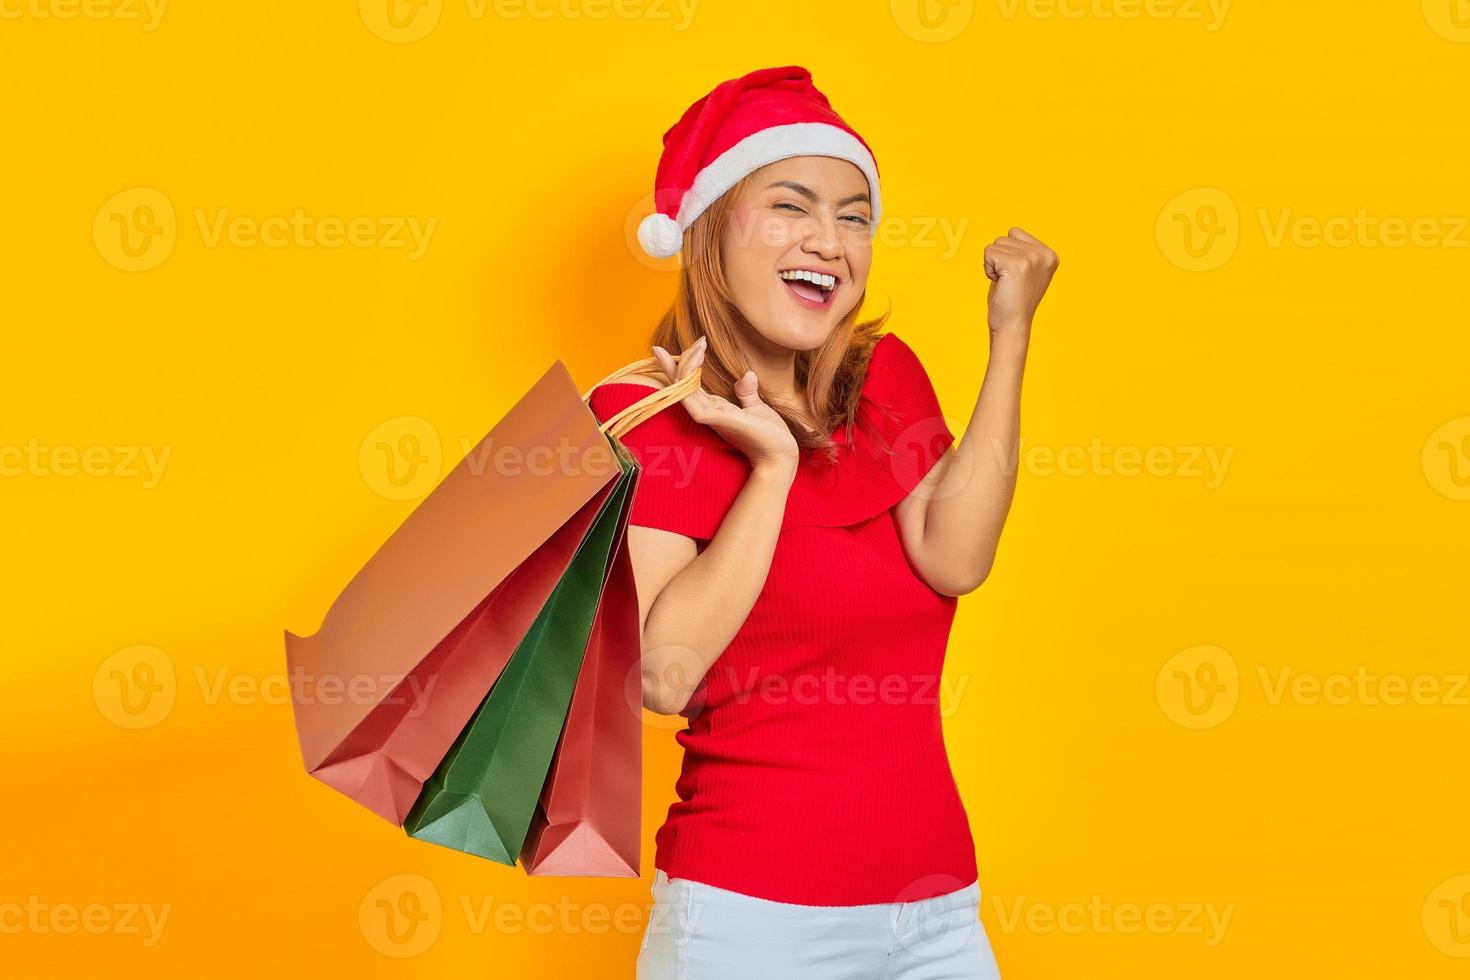 vrolijke jonge vrouw met kerstmuts die boodschappentassen vasthoudt en winkeltevredenheid viert foto